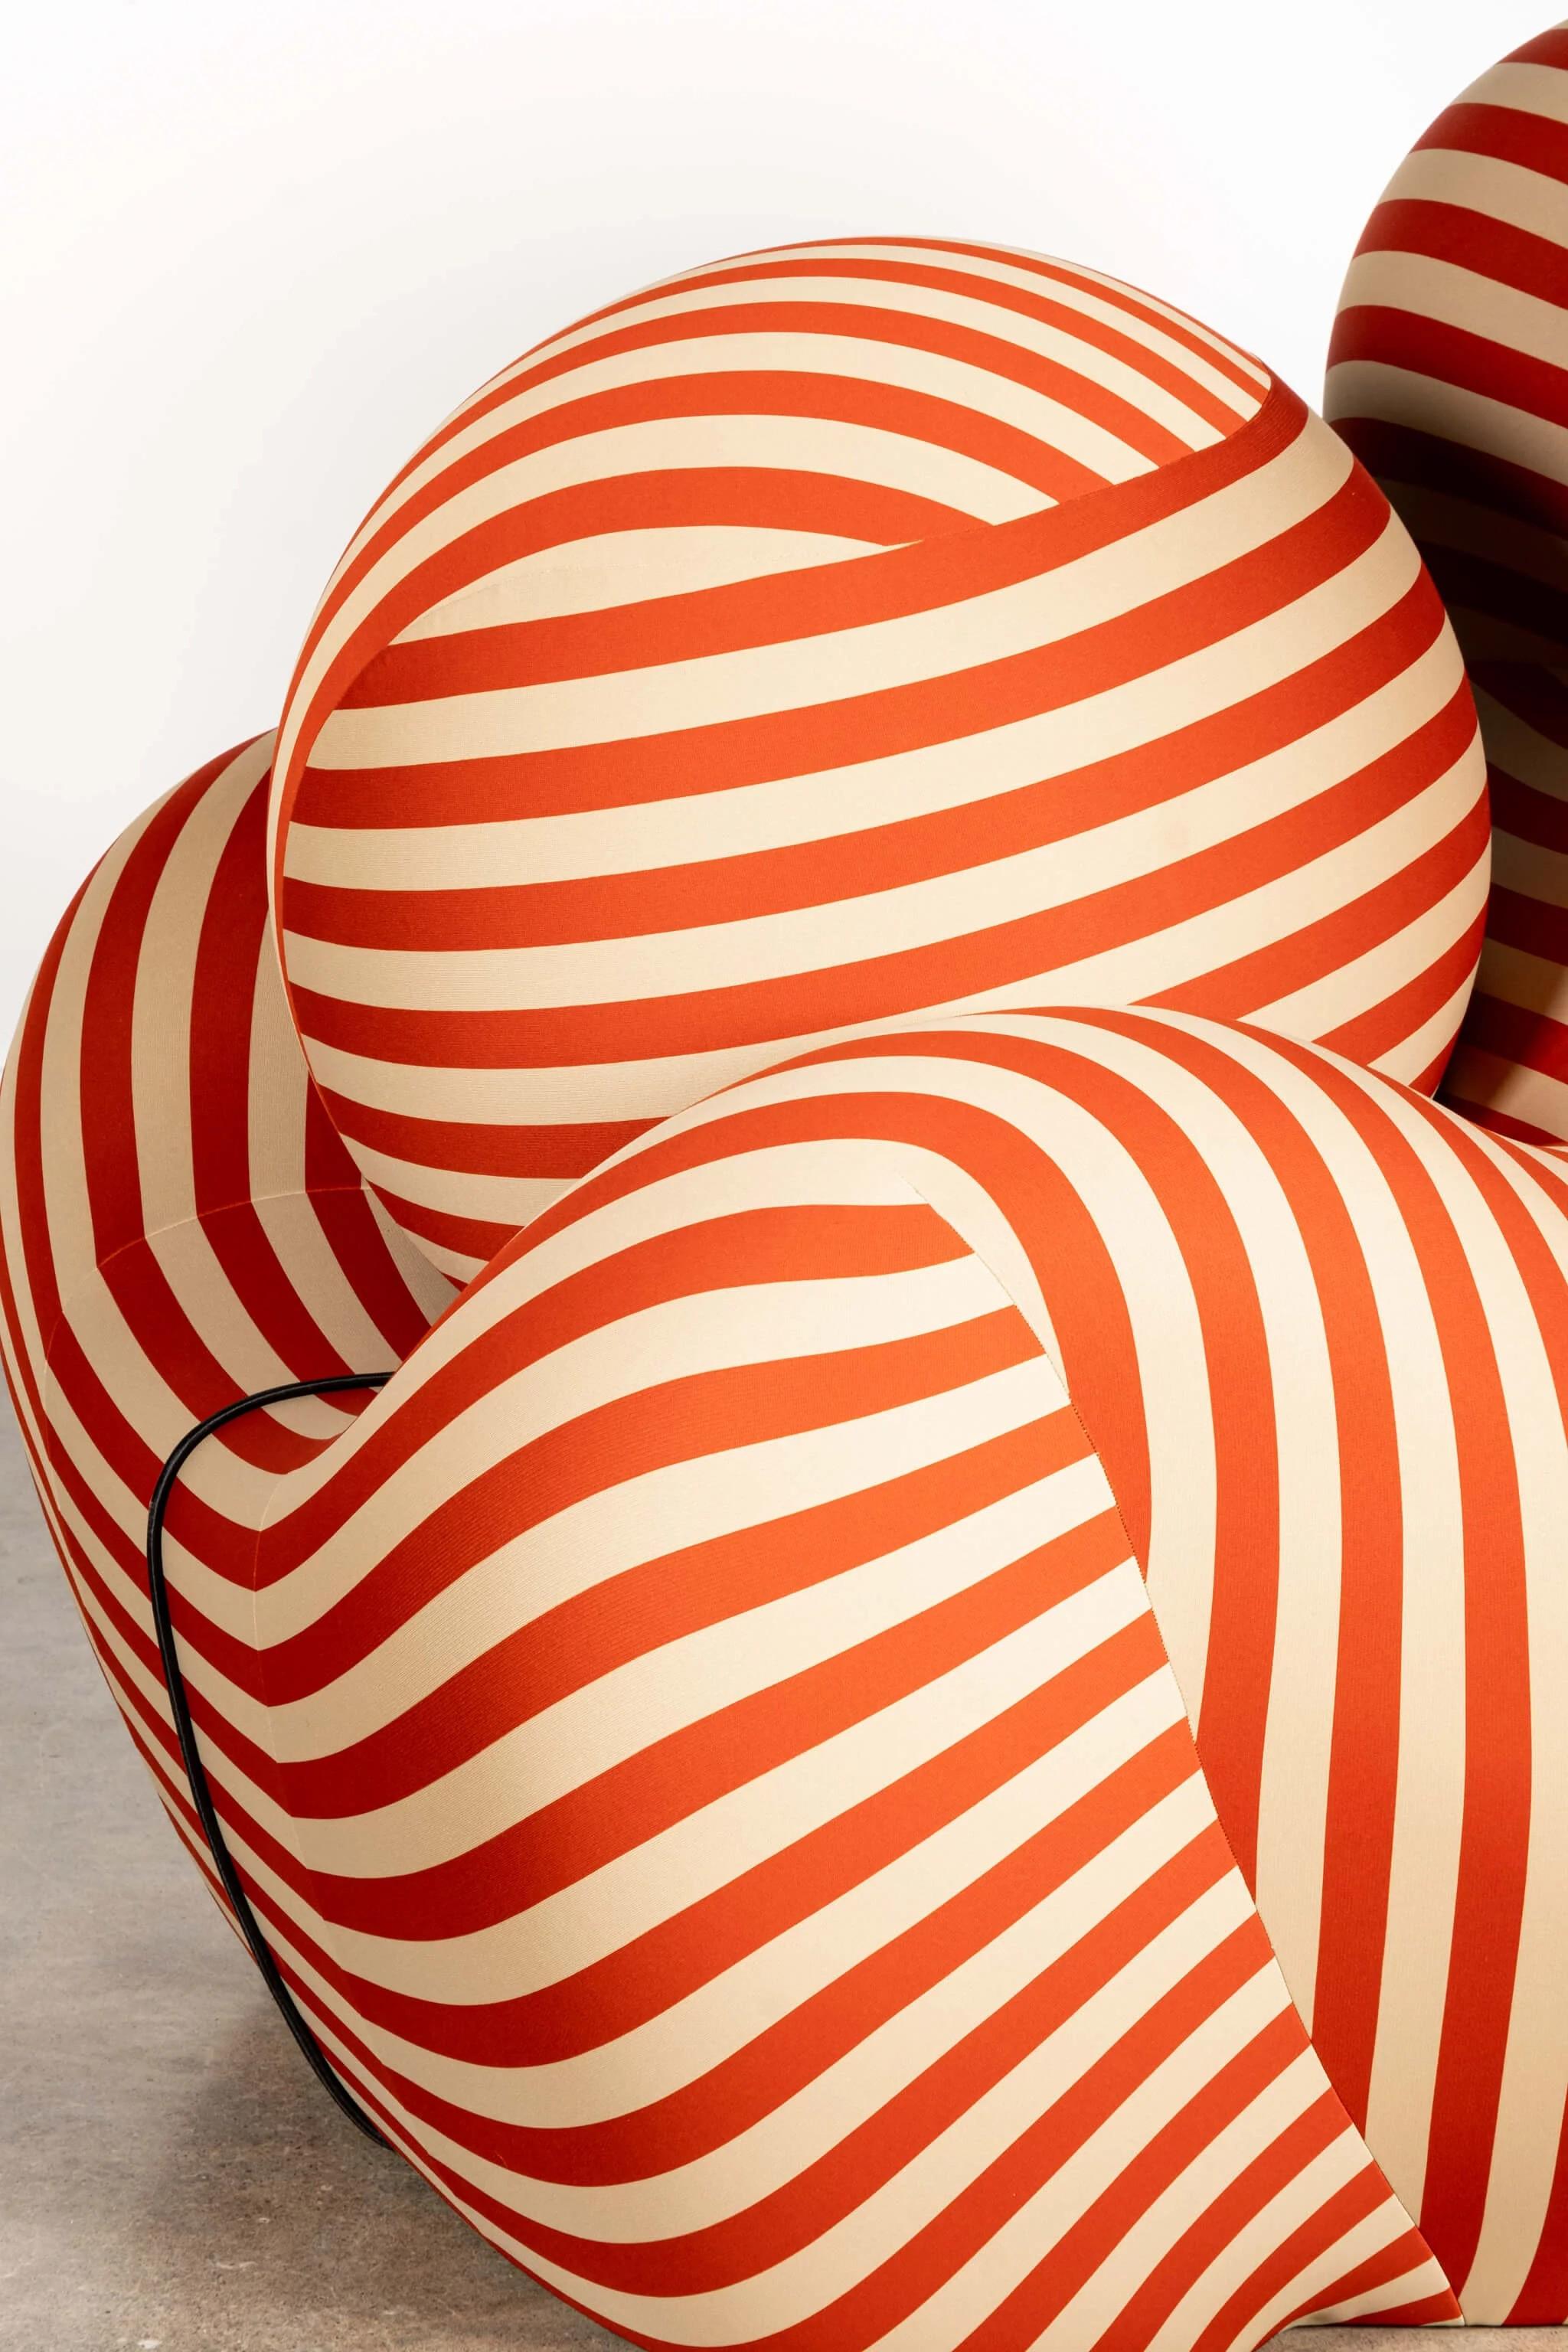 B&B Italia 'La Mamma' Up 5/6 Lounge Chair & Ottoman, Red Stripe by Gaetano Pesce For Sale 2